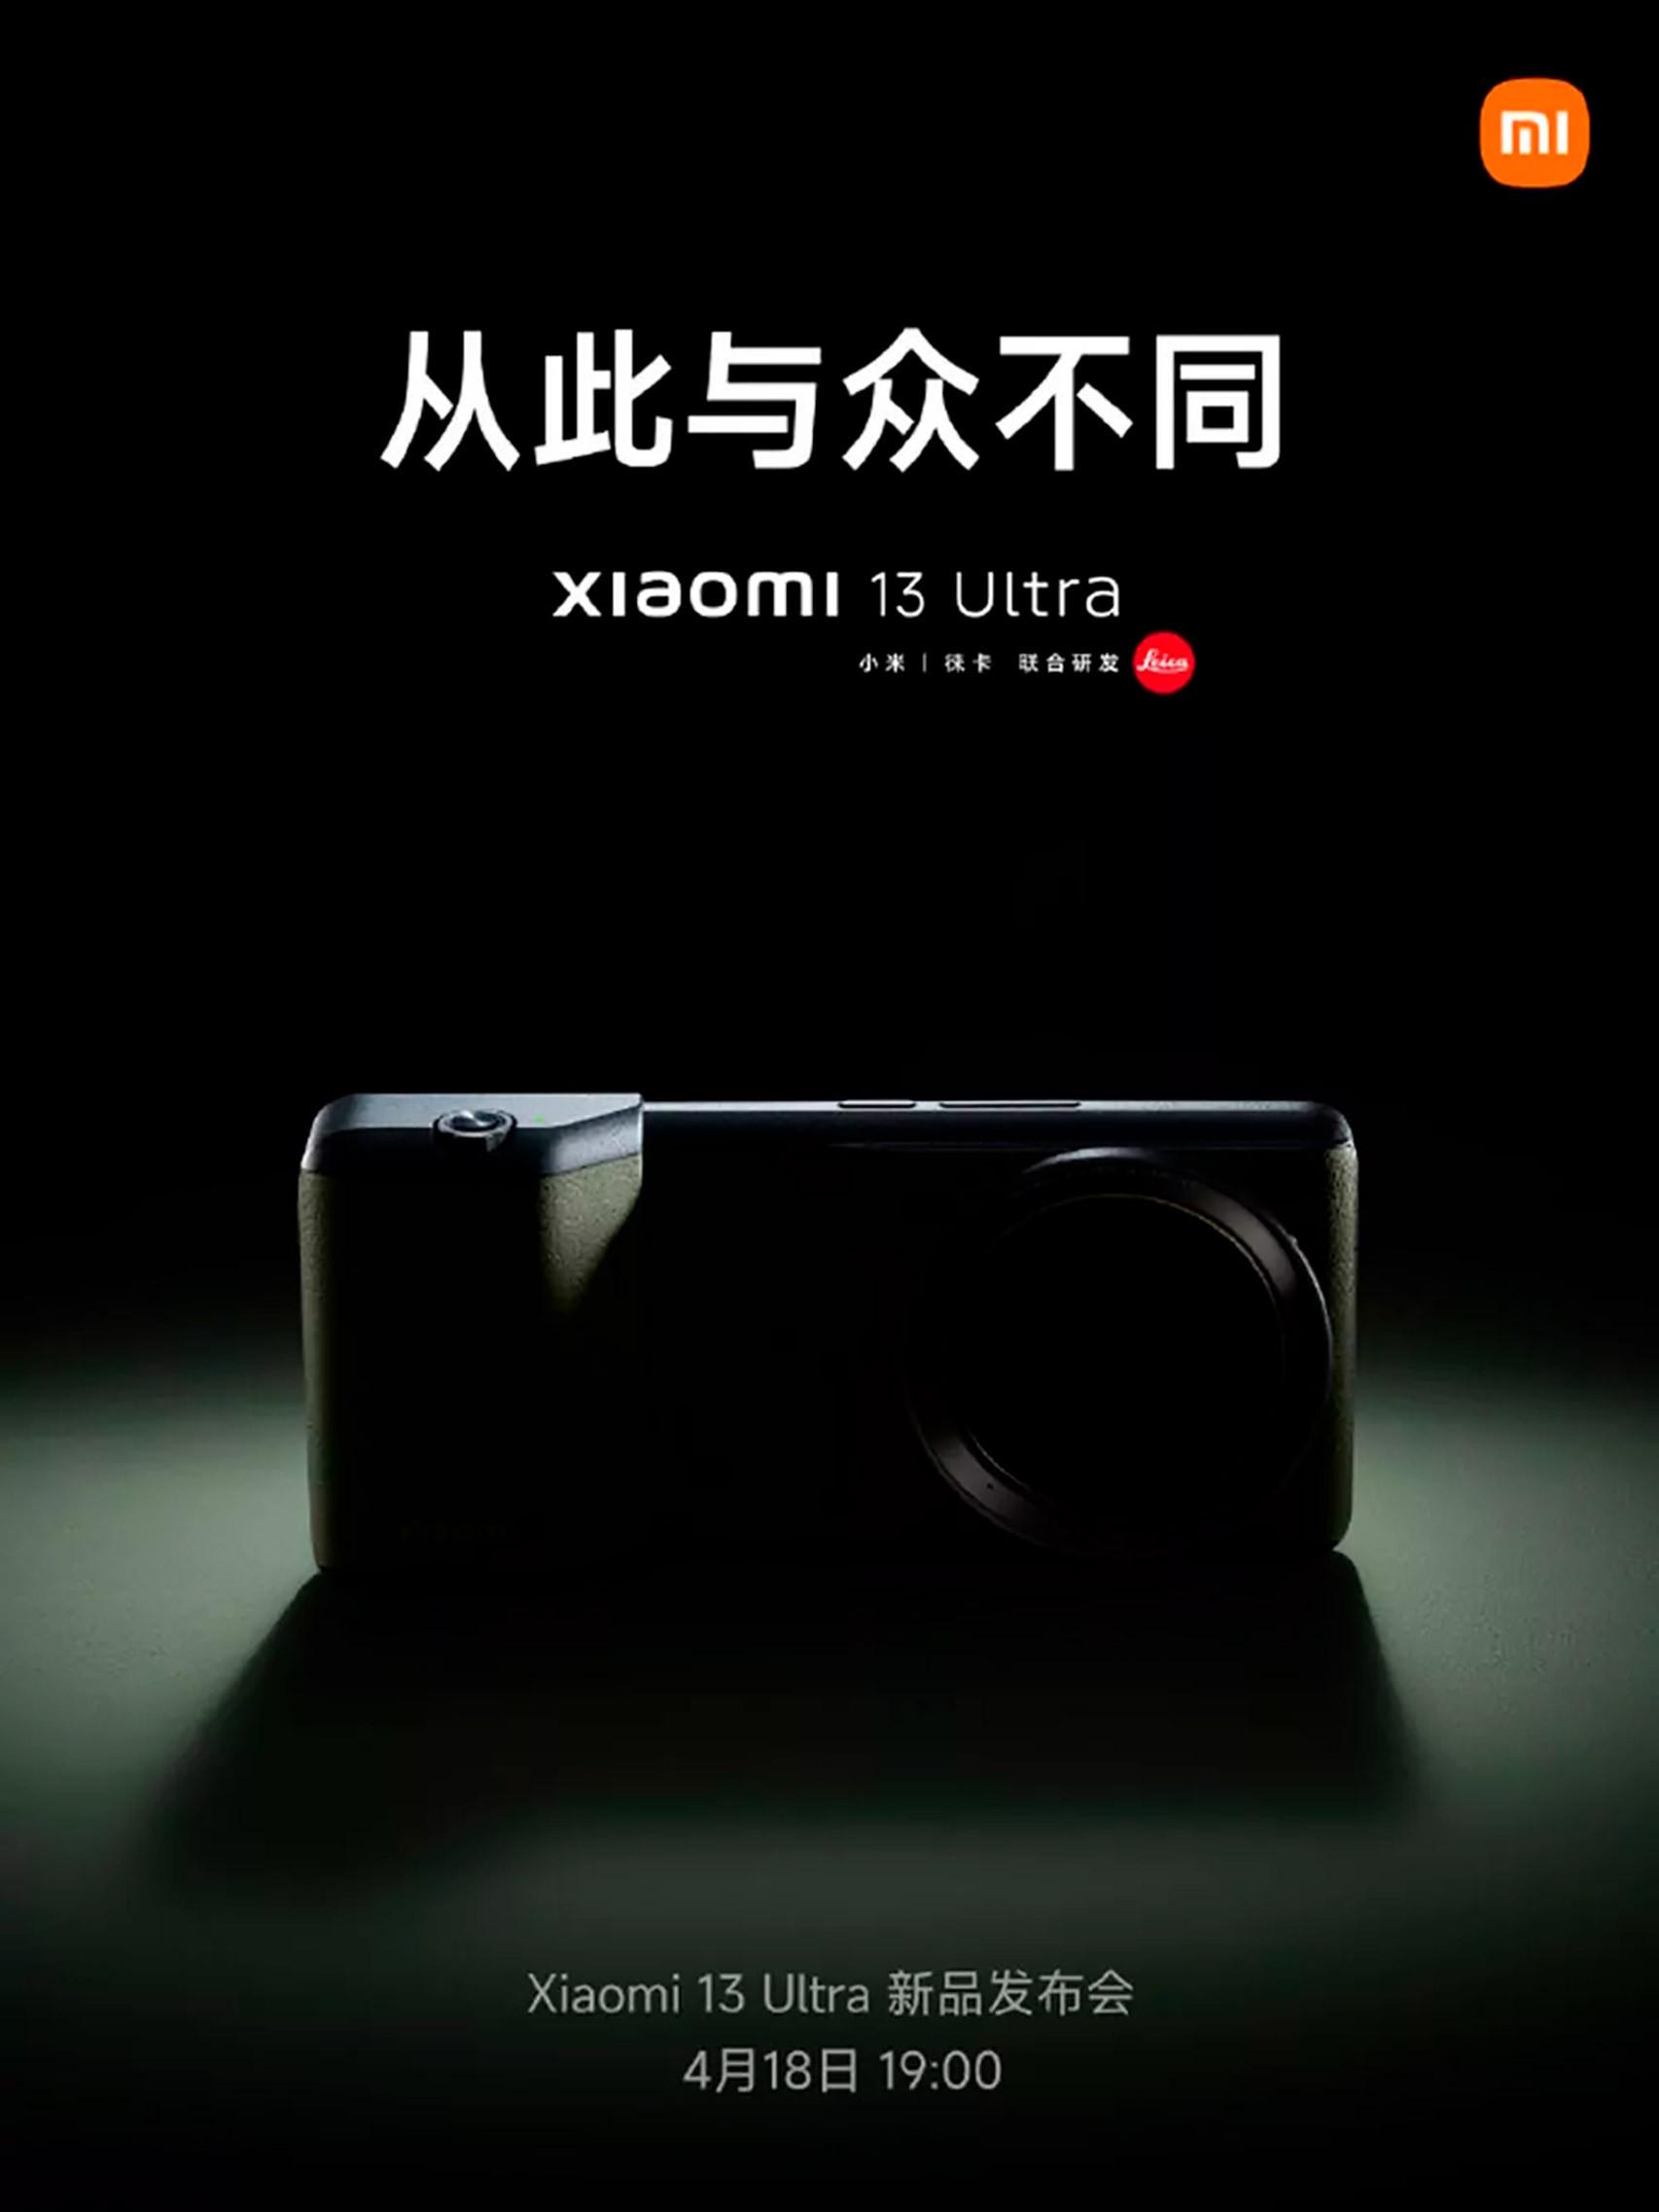 El anuncio de Xiaomi en Weibo